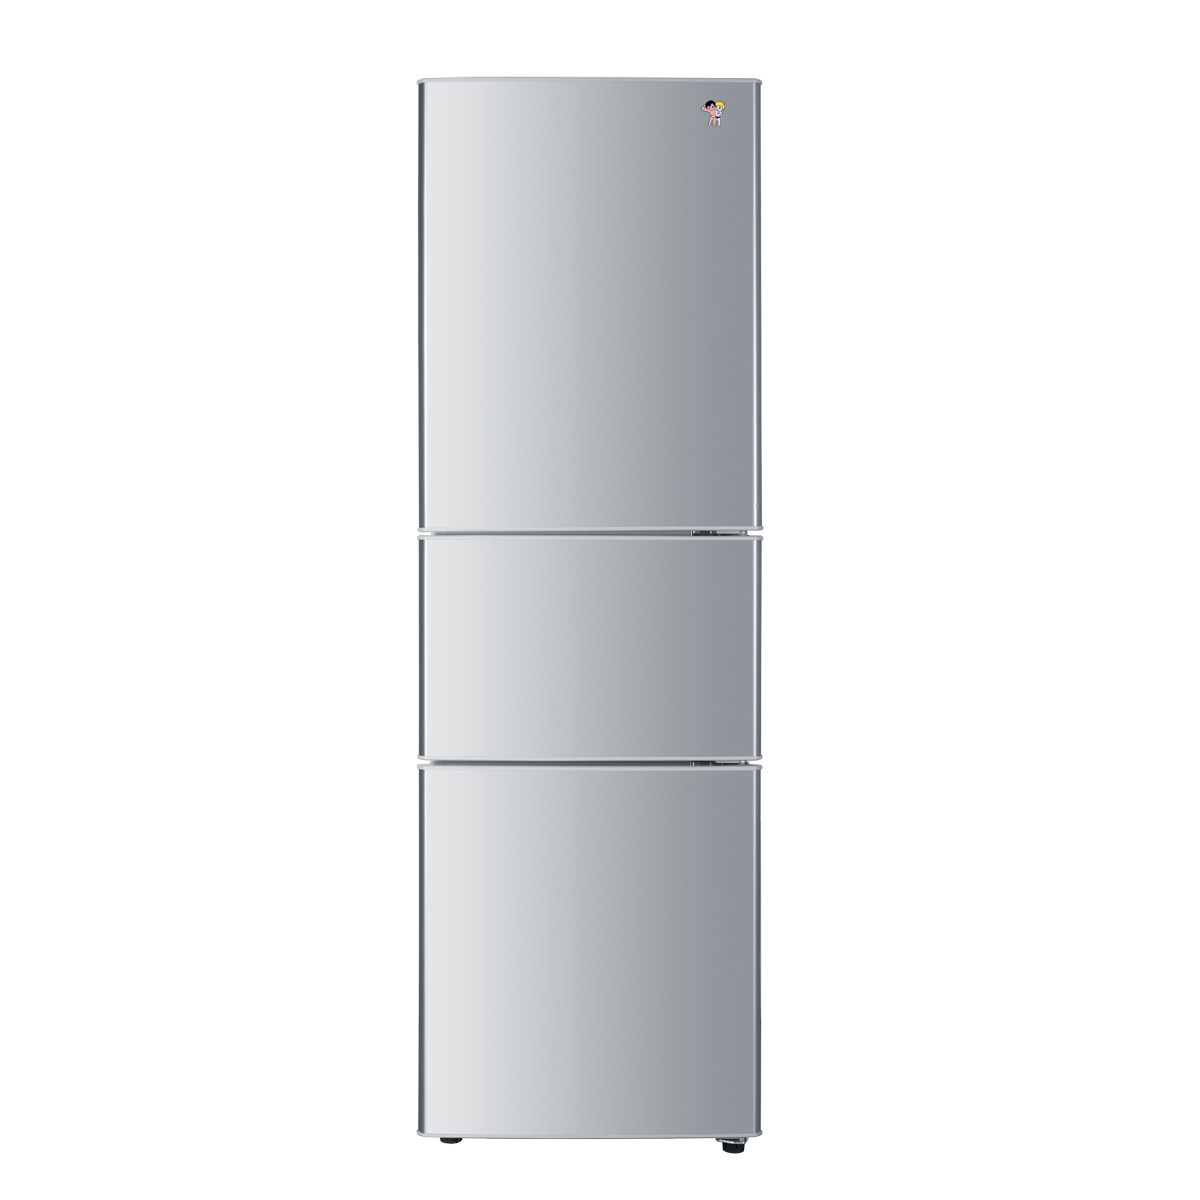 海尔Haier冰箱 BCD-216SZ 说明书